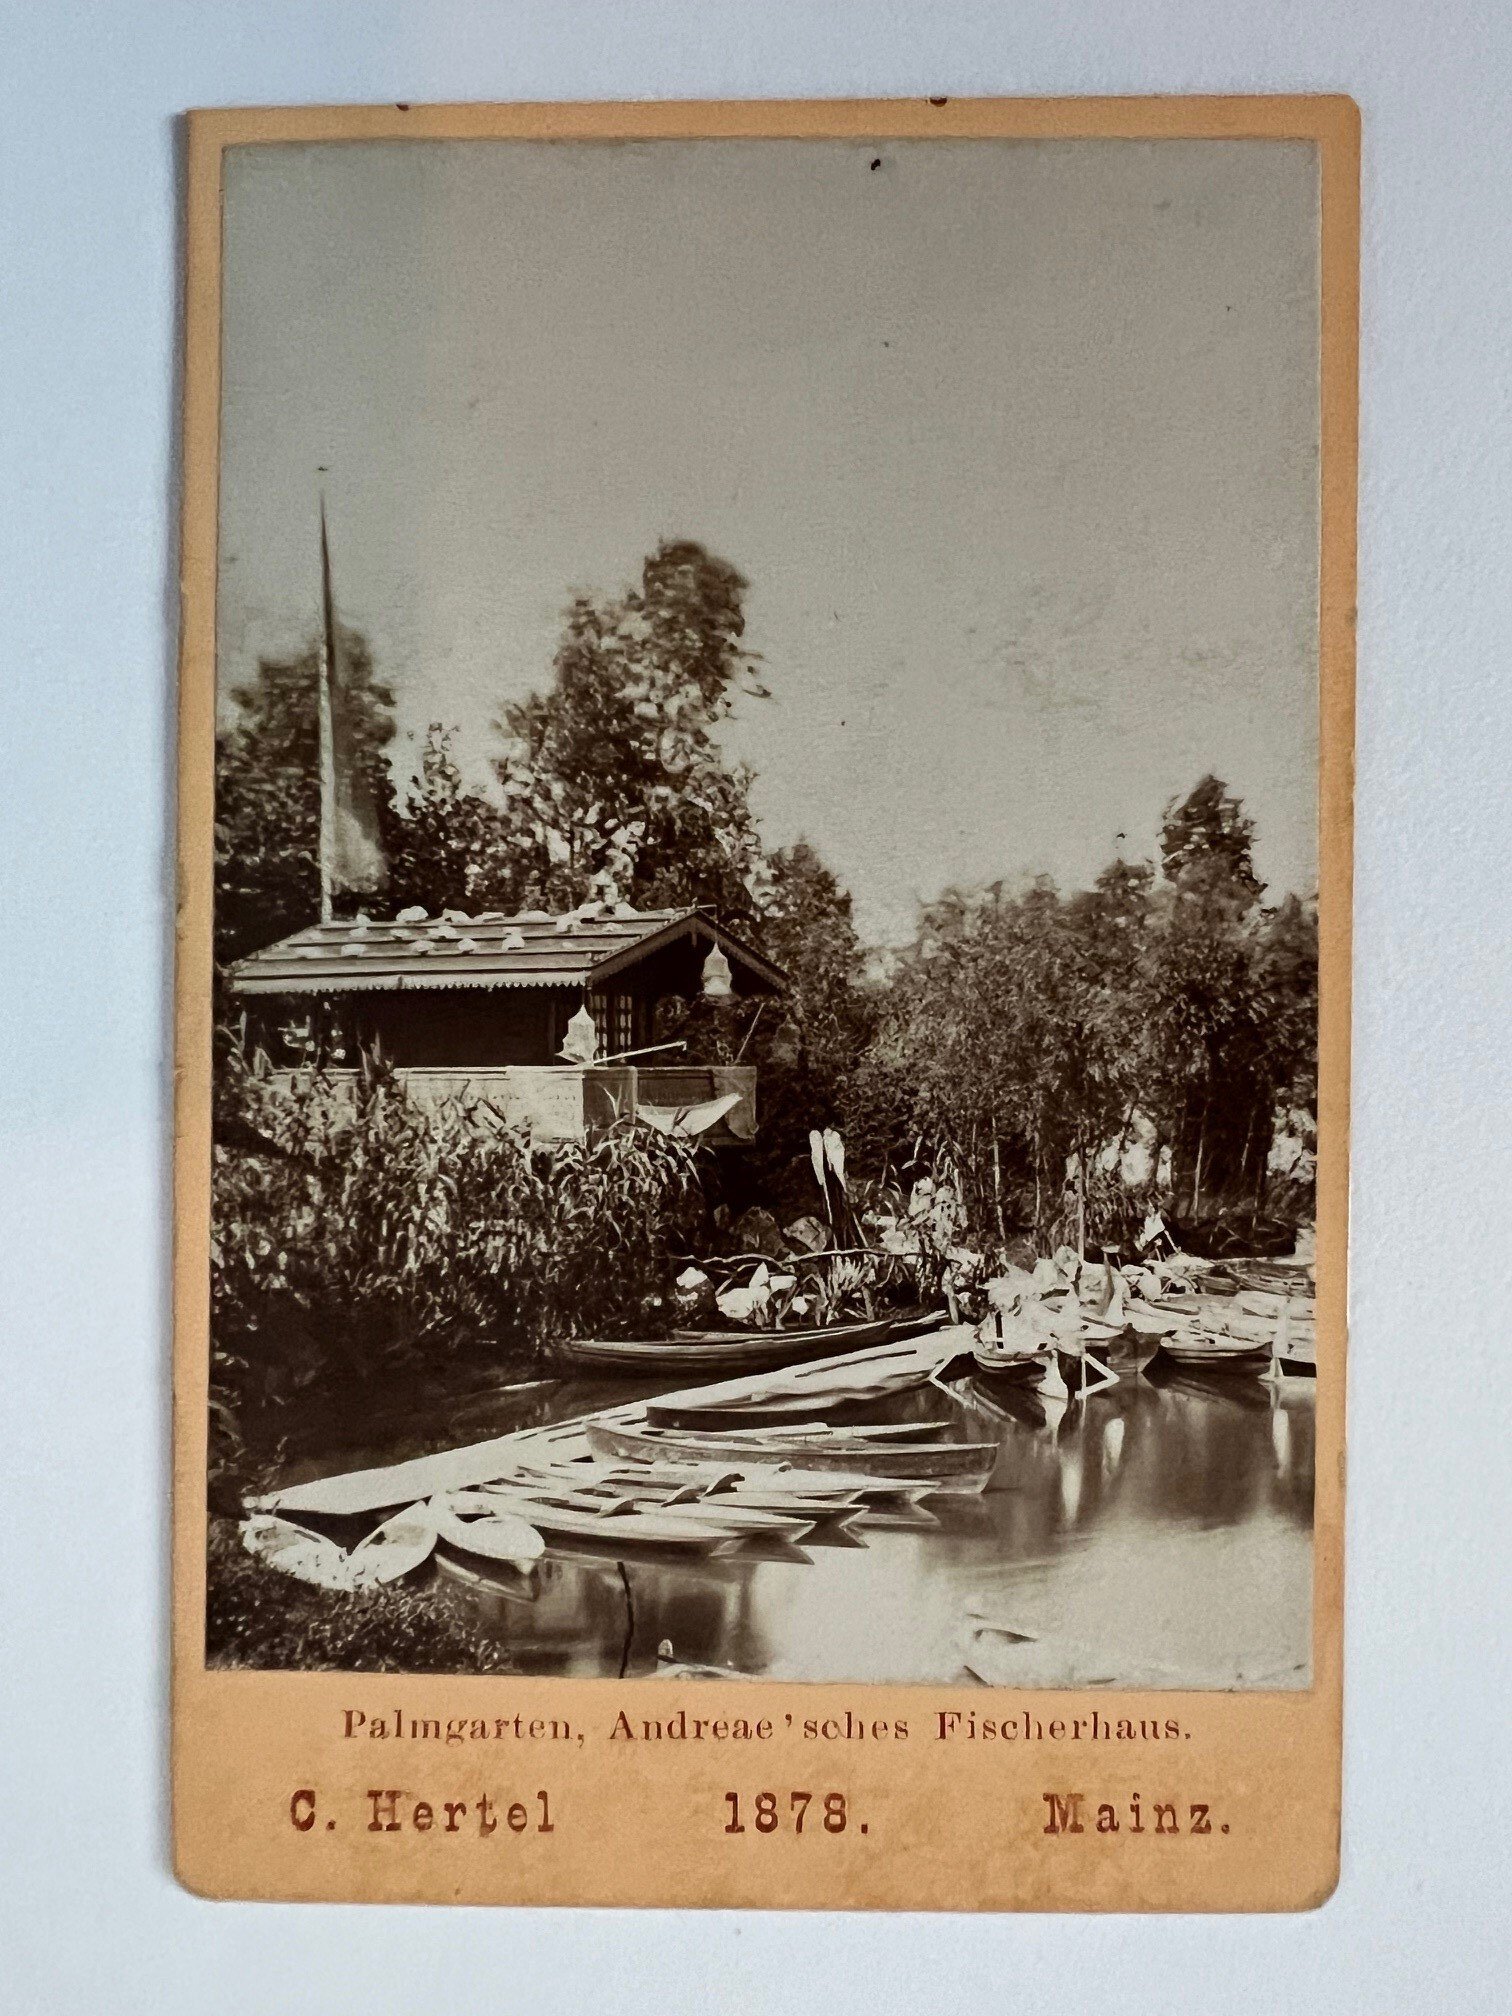 CdV, Carl Hertel, Frankfurt, Palmgarten, Andreae´sches Fischerhaus, 1878. (Taunus-Rhein-Main - Regionalgeschichtliche Sammlung Dr. Stefan Naas CC BY-NC-SA)